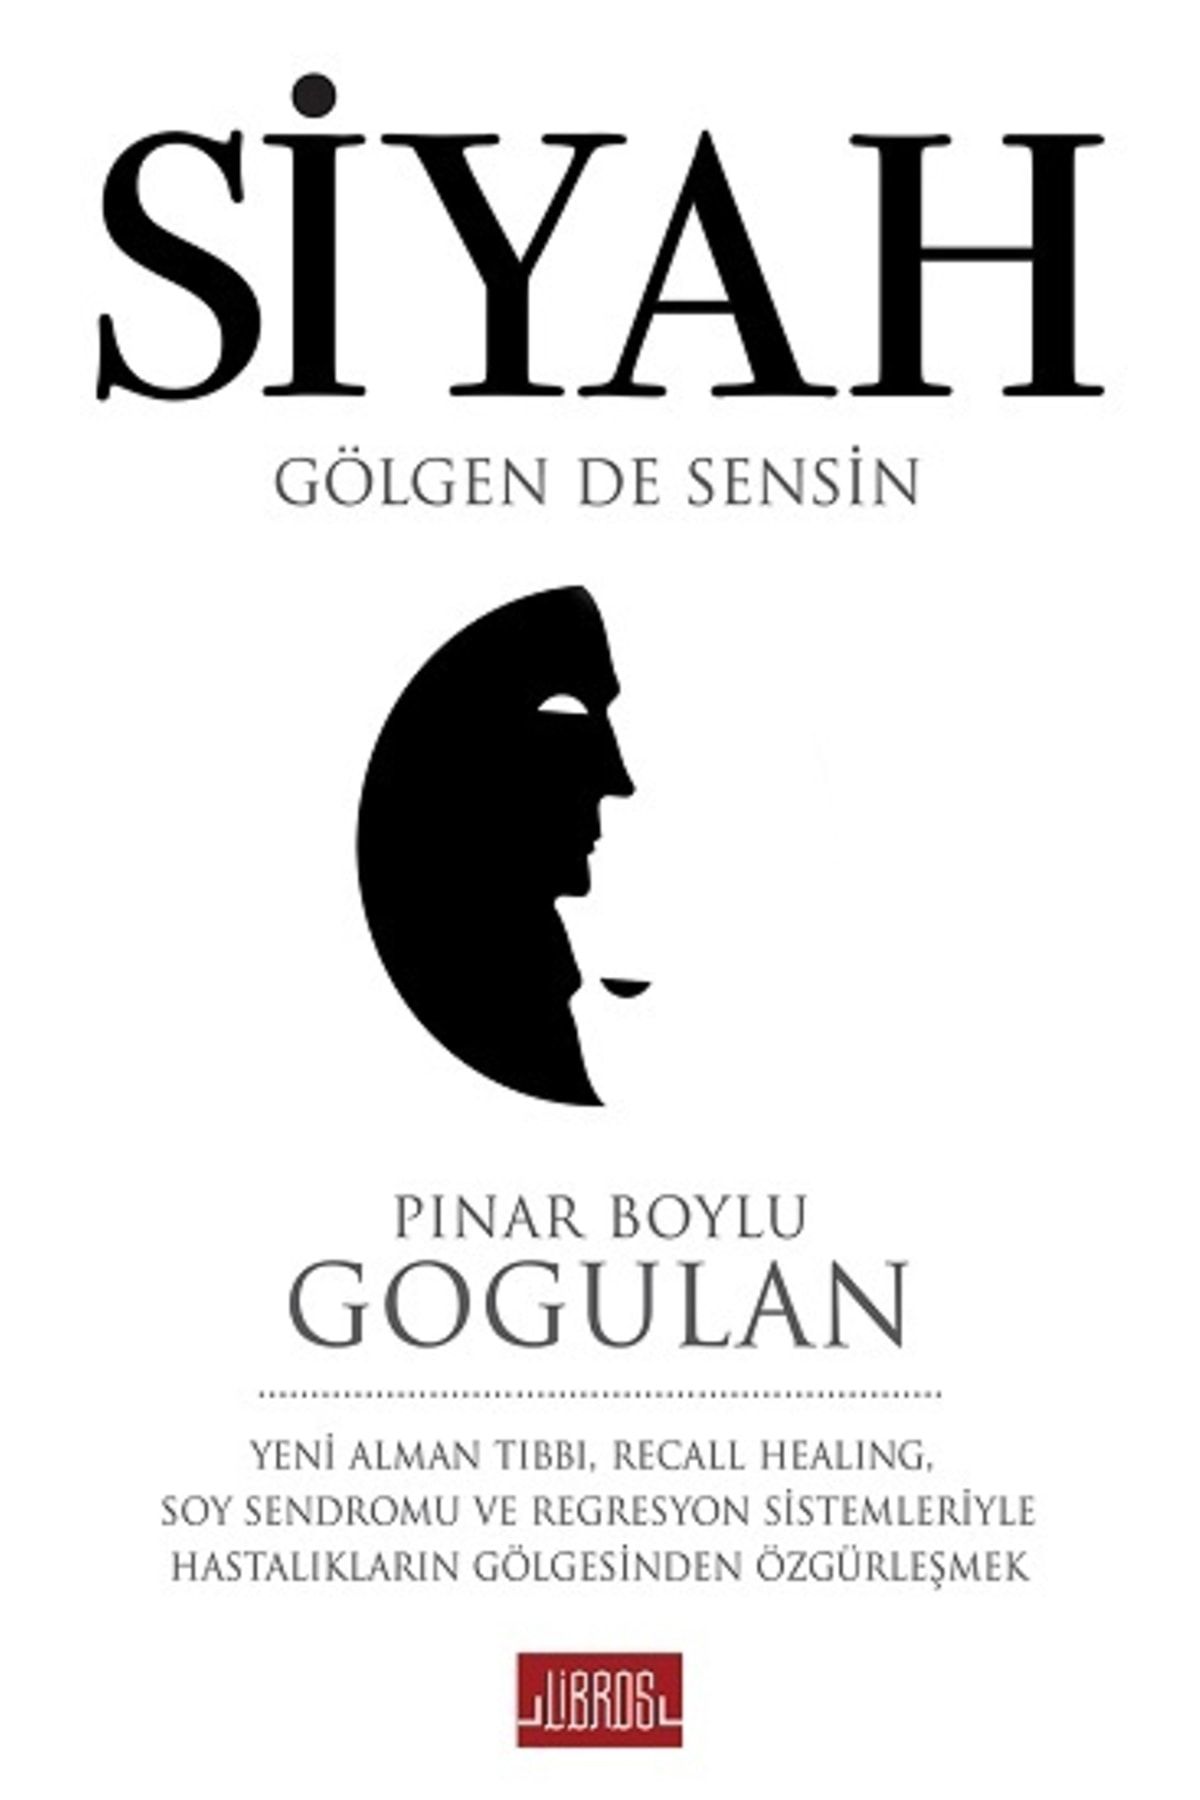 Libros Yayınları Siyah - Pınar Boylu Gogulan -